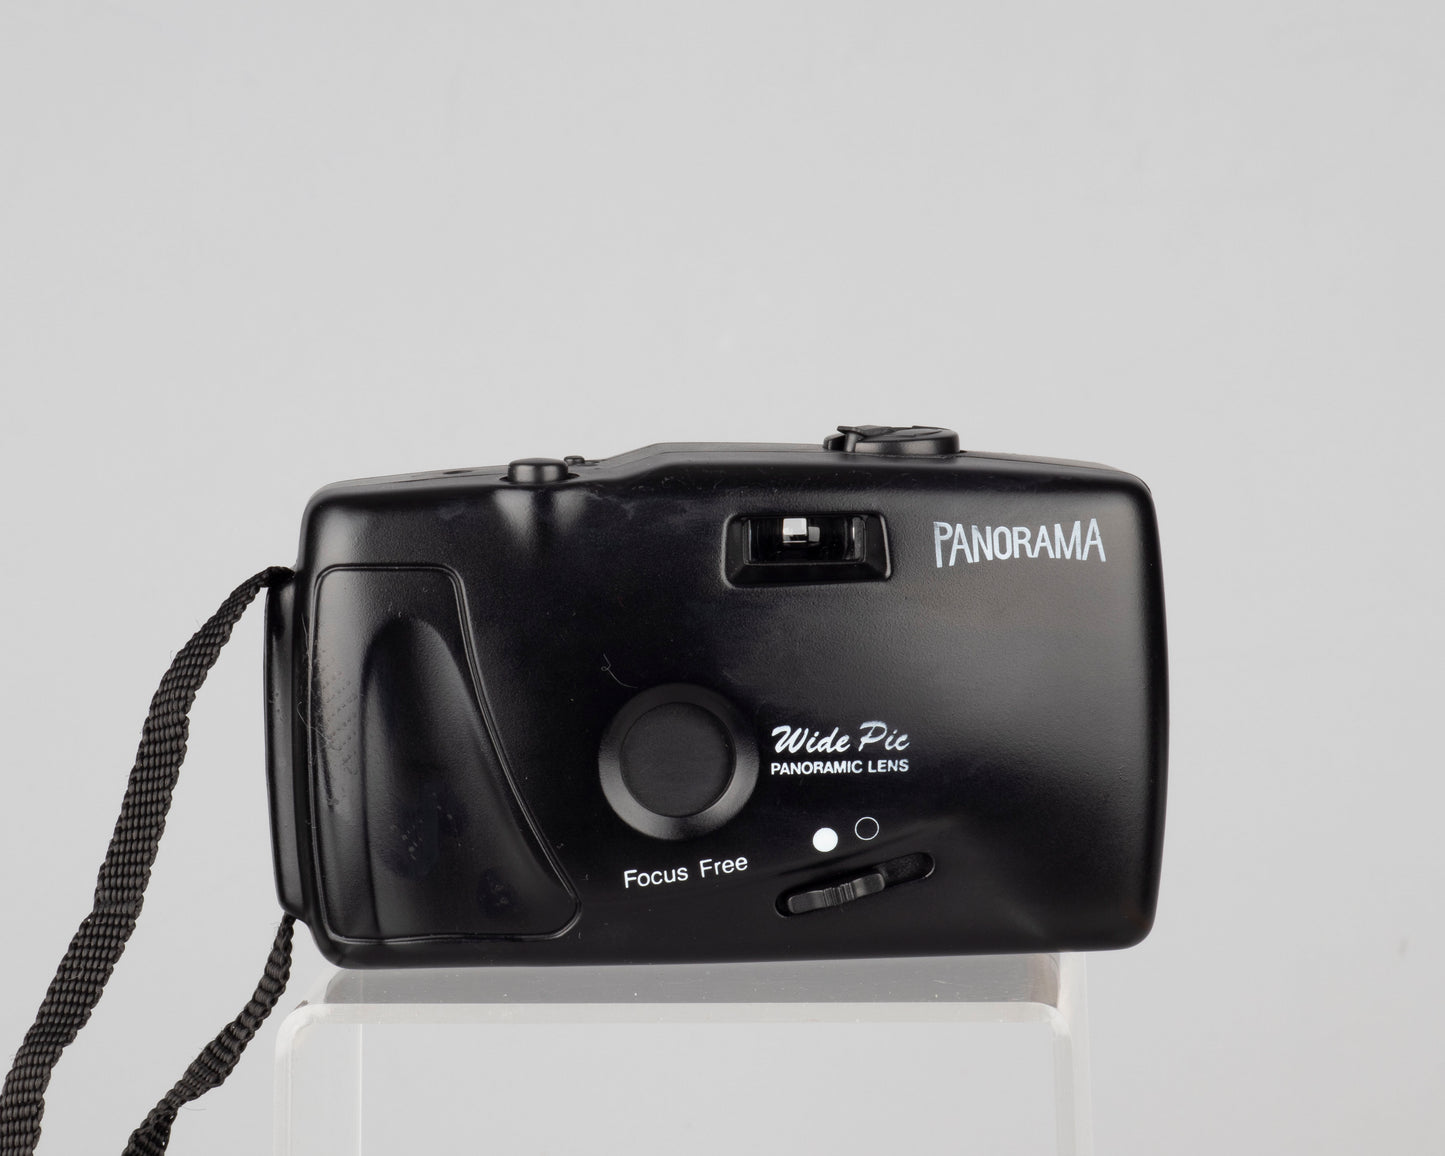 Panorama Wide Pic focus free 35mm camera w/ original case and manual (serial 709121)